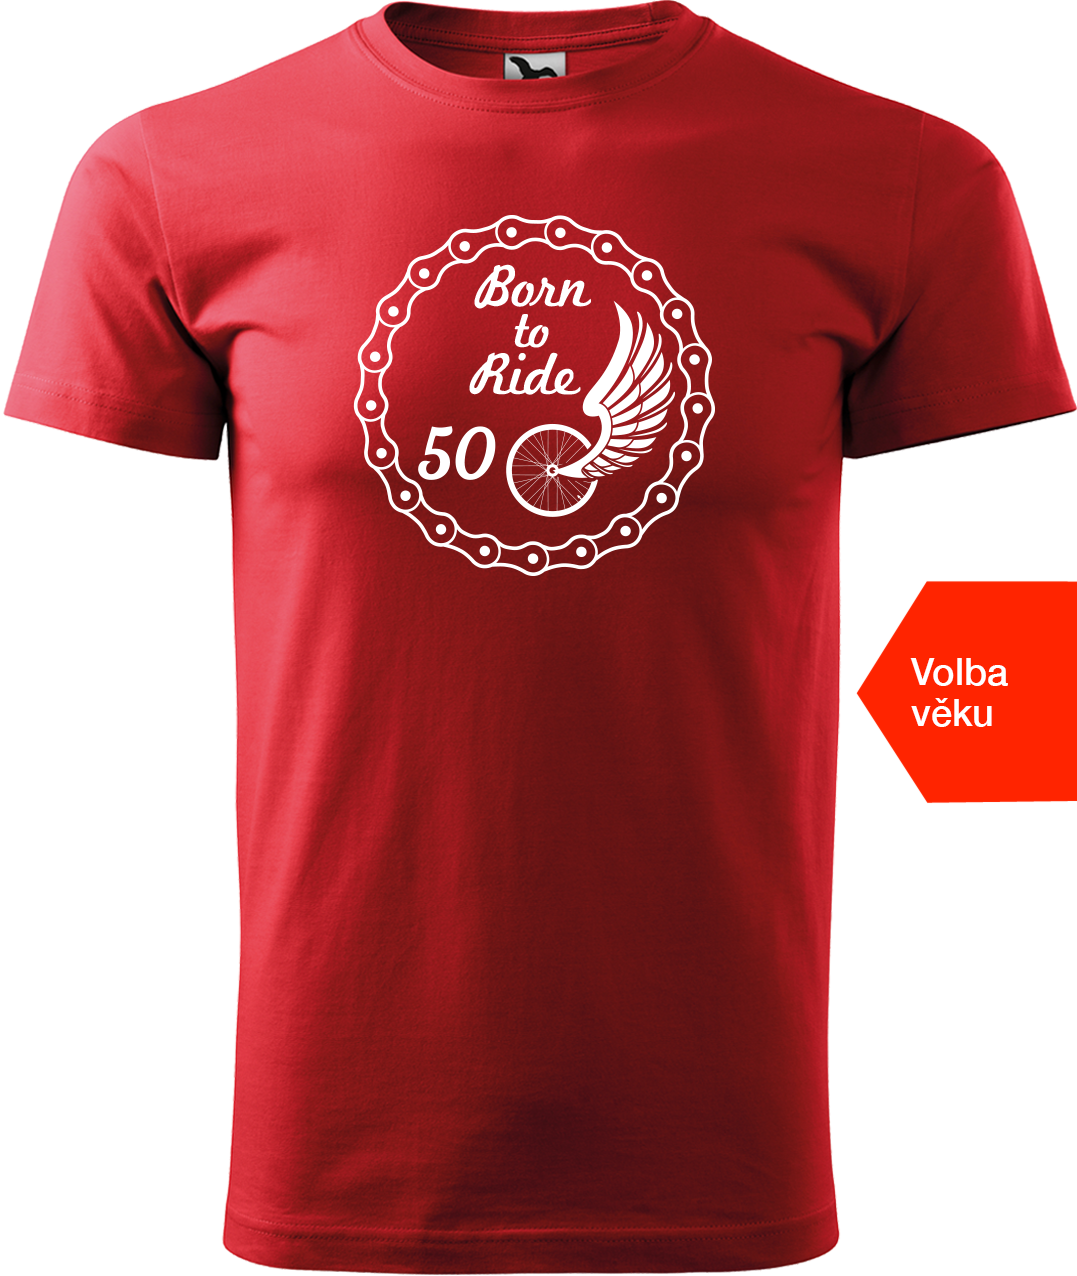 Pánské tričko pro cyklistu s věkem - Born to Ride (wings) Velikost: L, Barva: Červená (07)